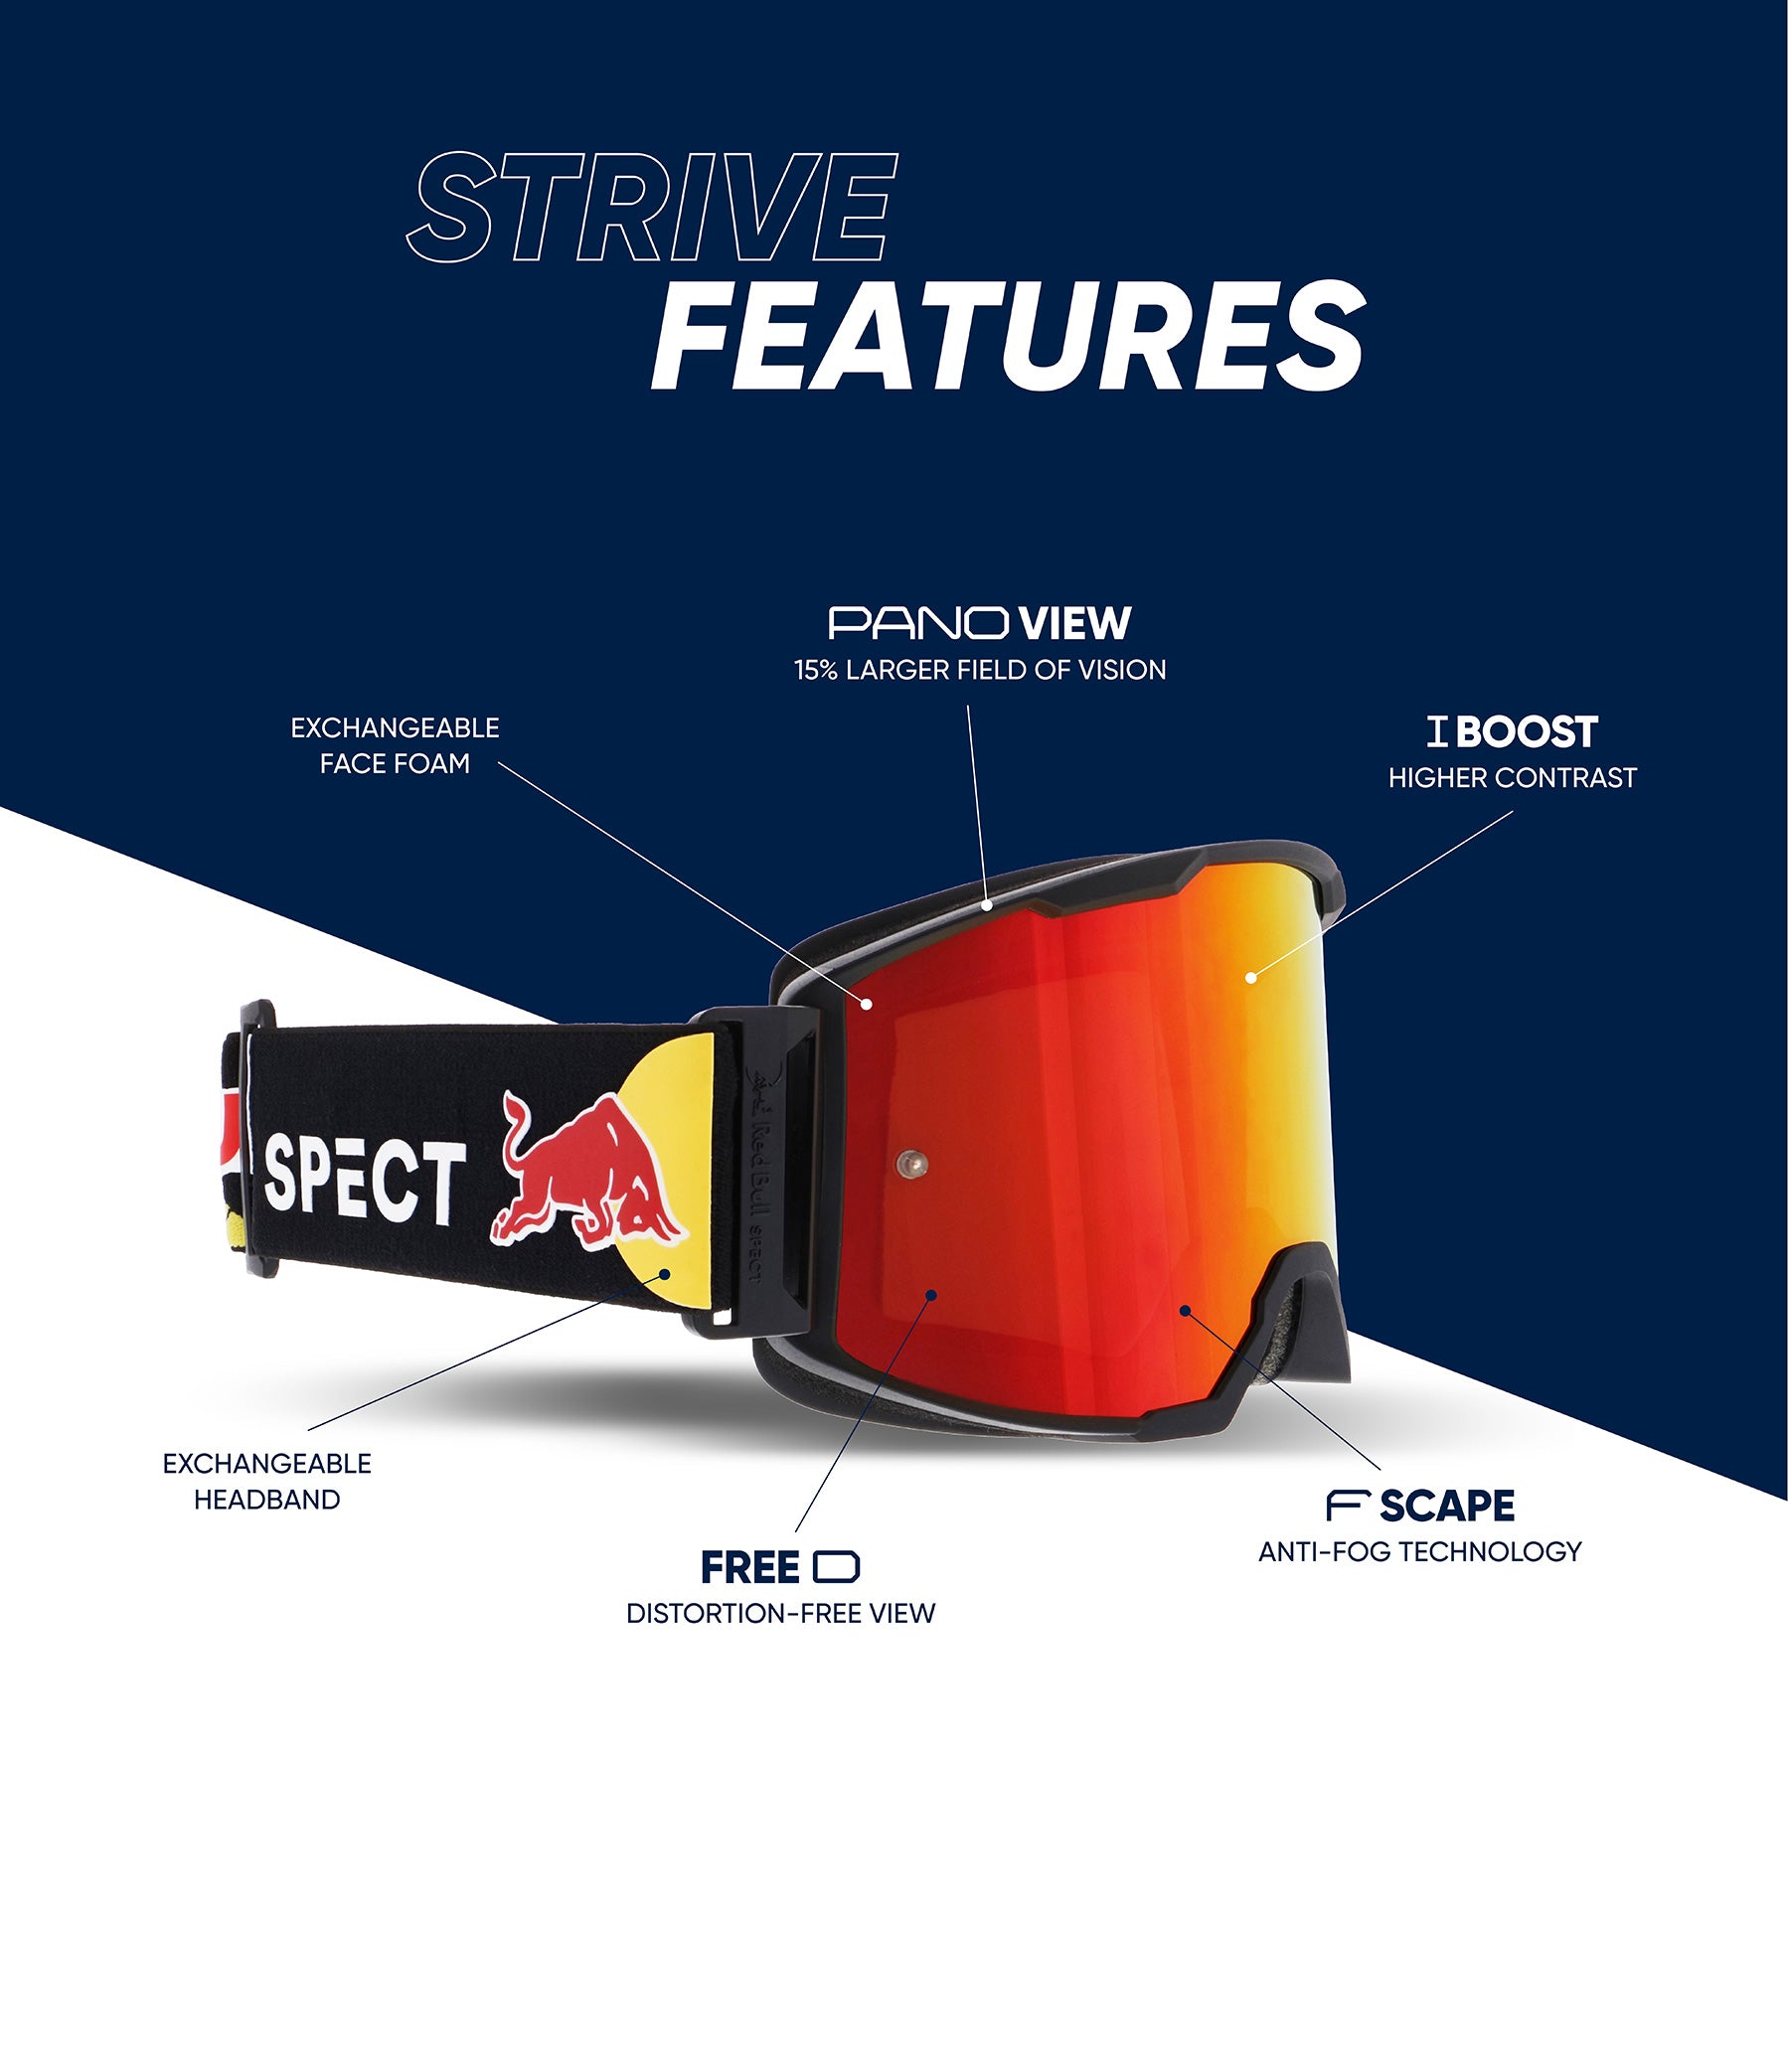 ACCESSOIRE - lunettes Red Bull Racing Eyewear, gamme Sports Tech - Mototribu